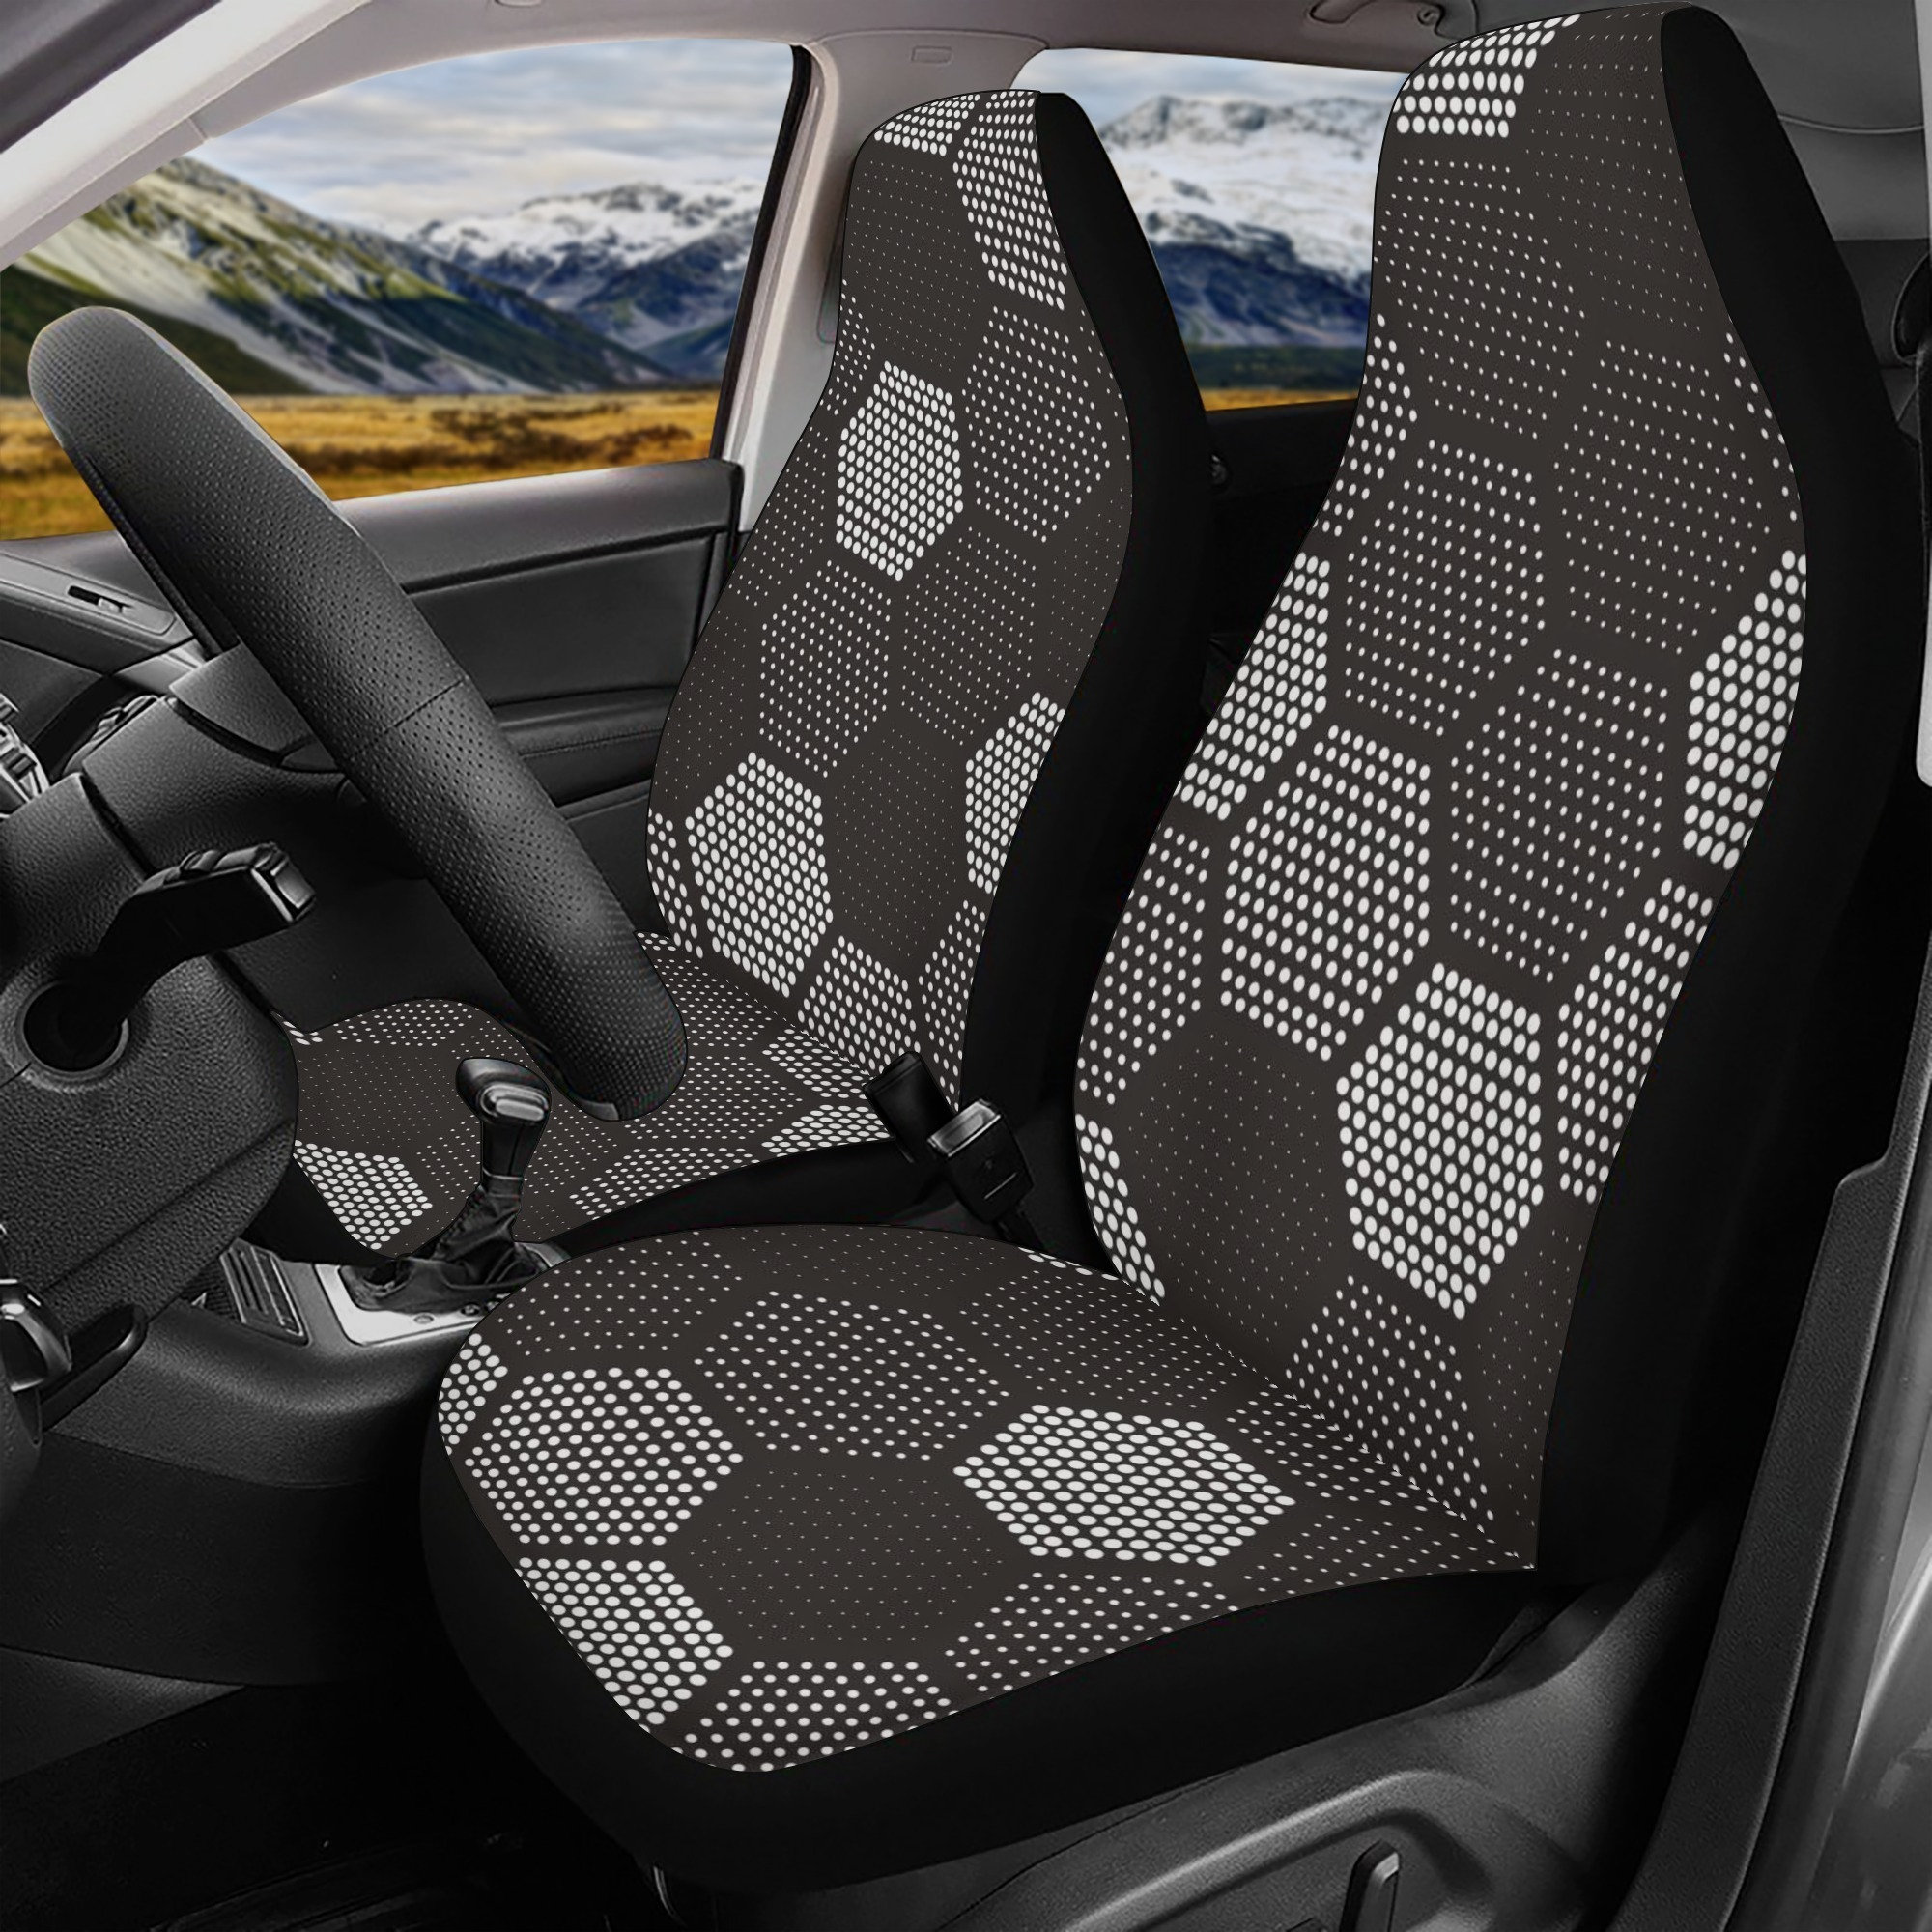 Discover Hexagon Car Seat Cover